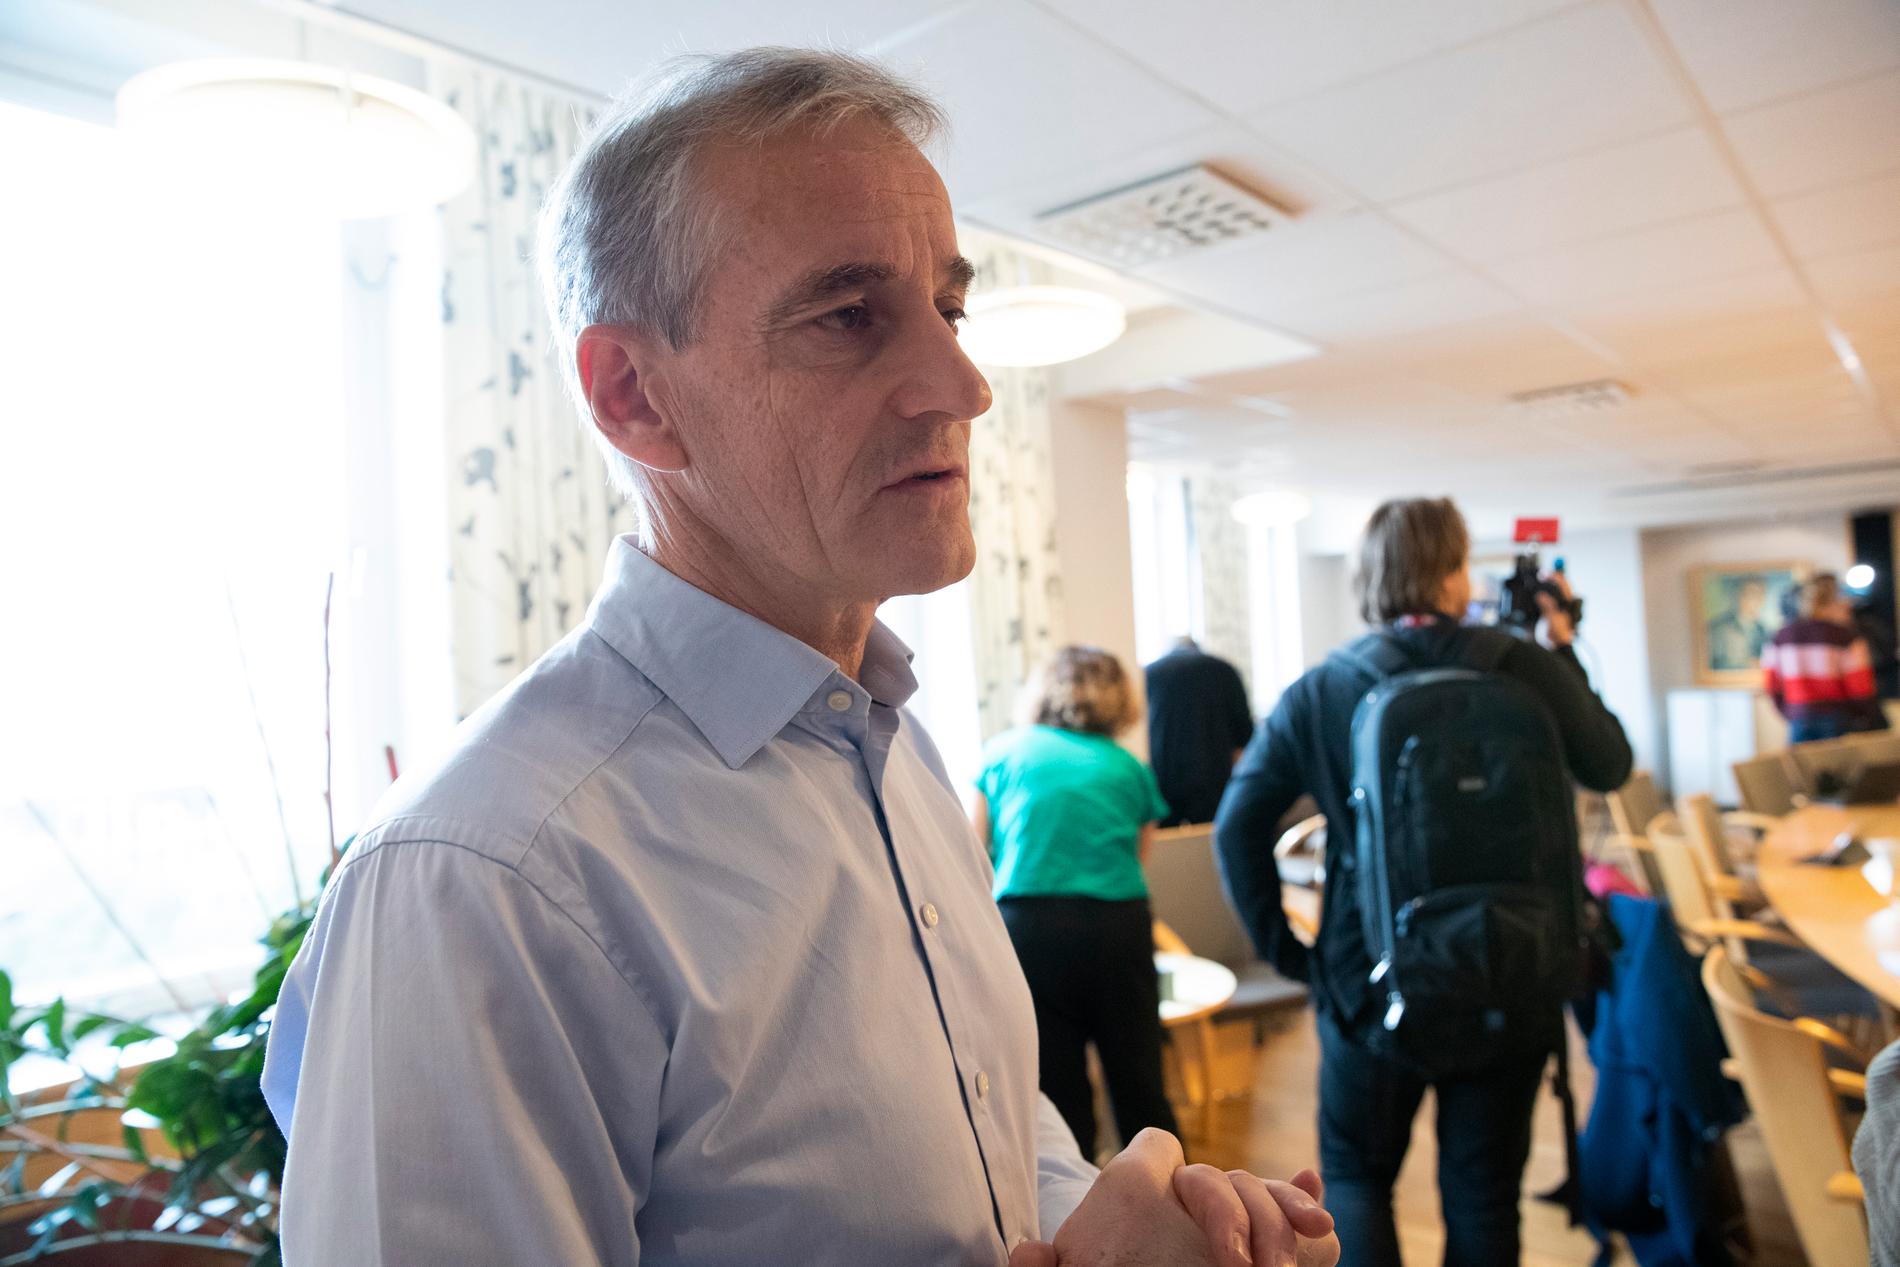 Arbeiderpartiets ledare Jonas Gahr Støre konstaterar att slitningar inom regeringen har fått den att spricka.